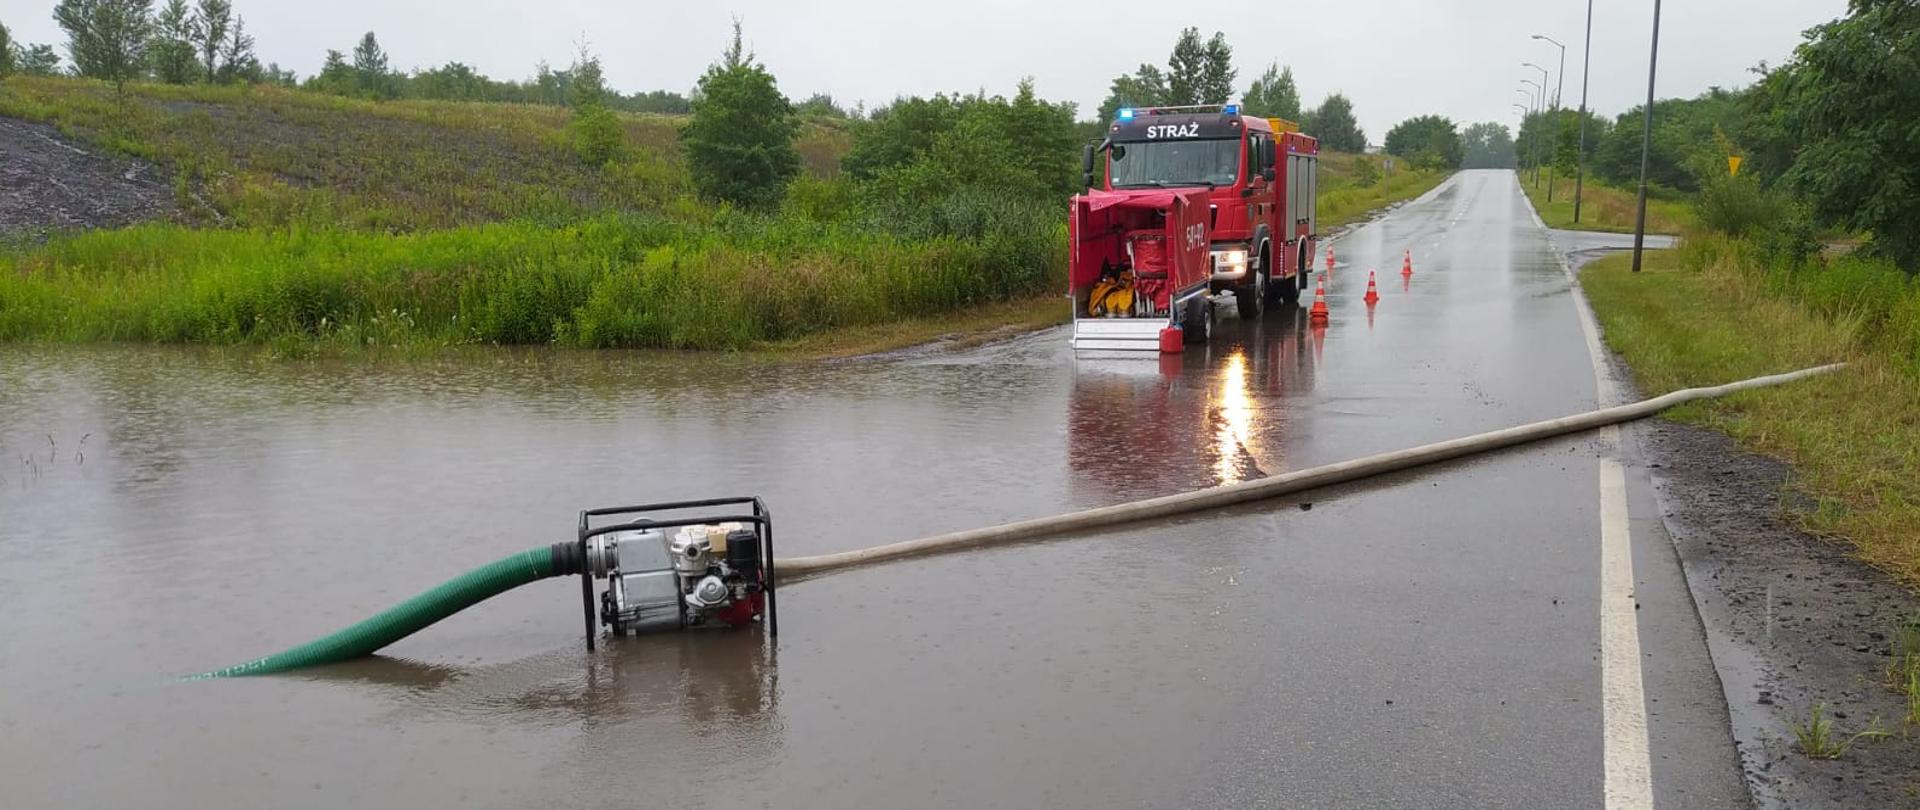 Zalana po ulewach droga, samochód strażacki ze sprzętem, pompa ustawiona do wypompowywania wody